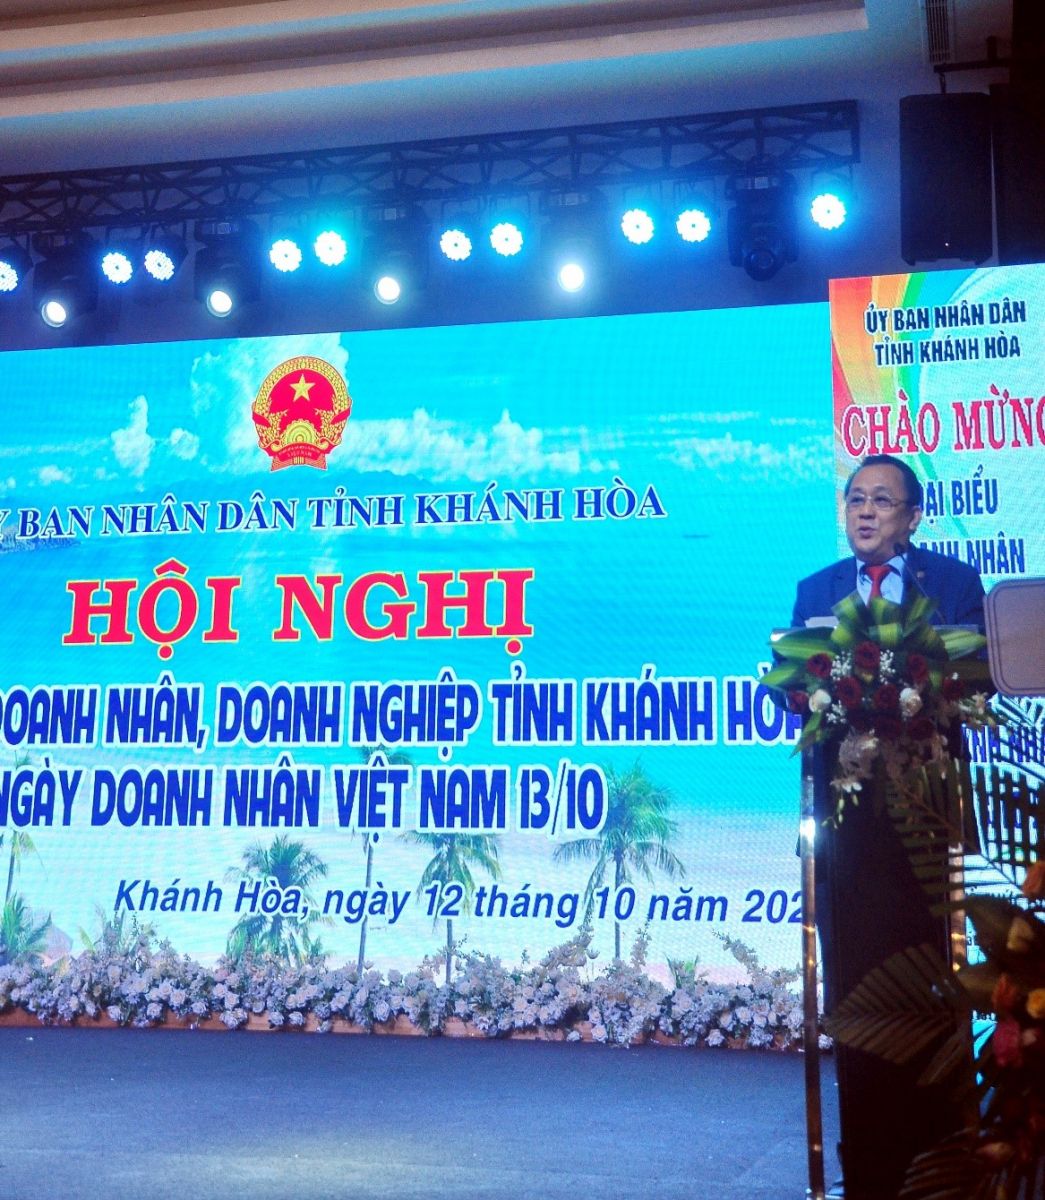  Ông Lê Hữu Hoàng, Phó Chủ tịch Thường trực UBND tỉnh Khánh Hòa phát biểu tại Hội nghị